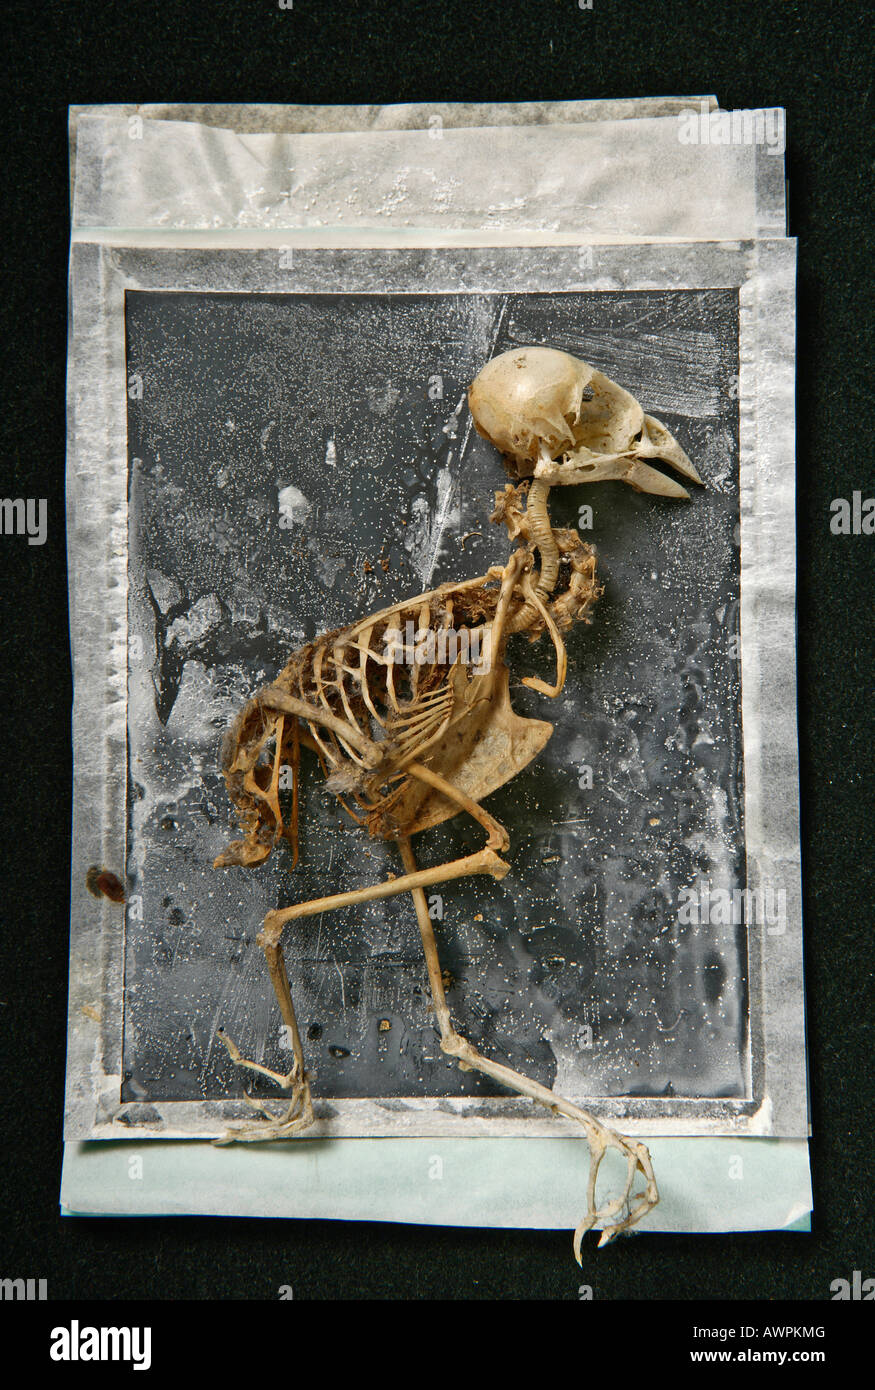 Sparrow skeleton on a textured background, Polaroid art Stock Photo